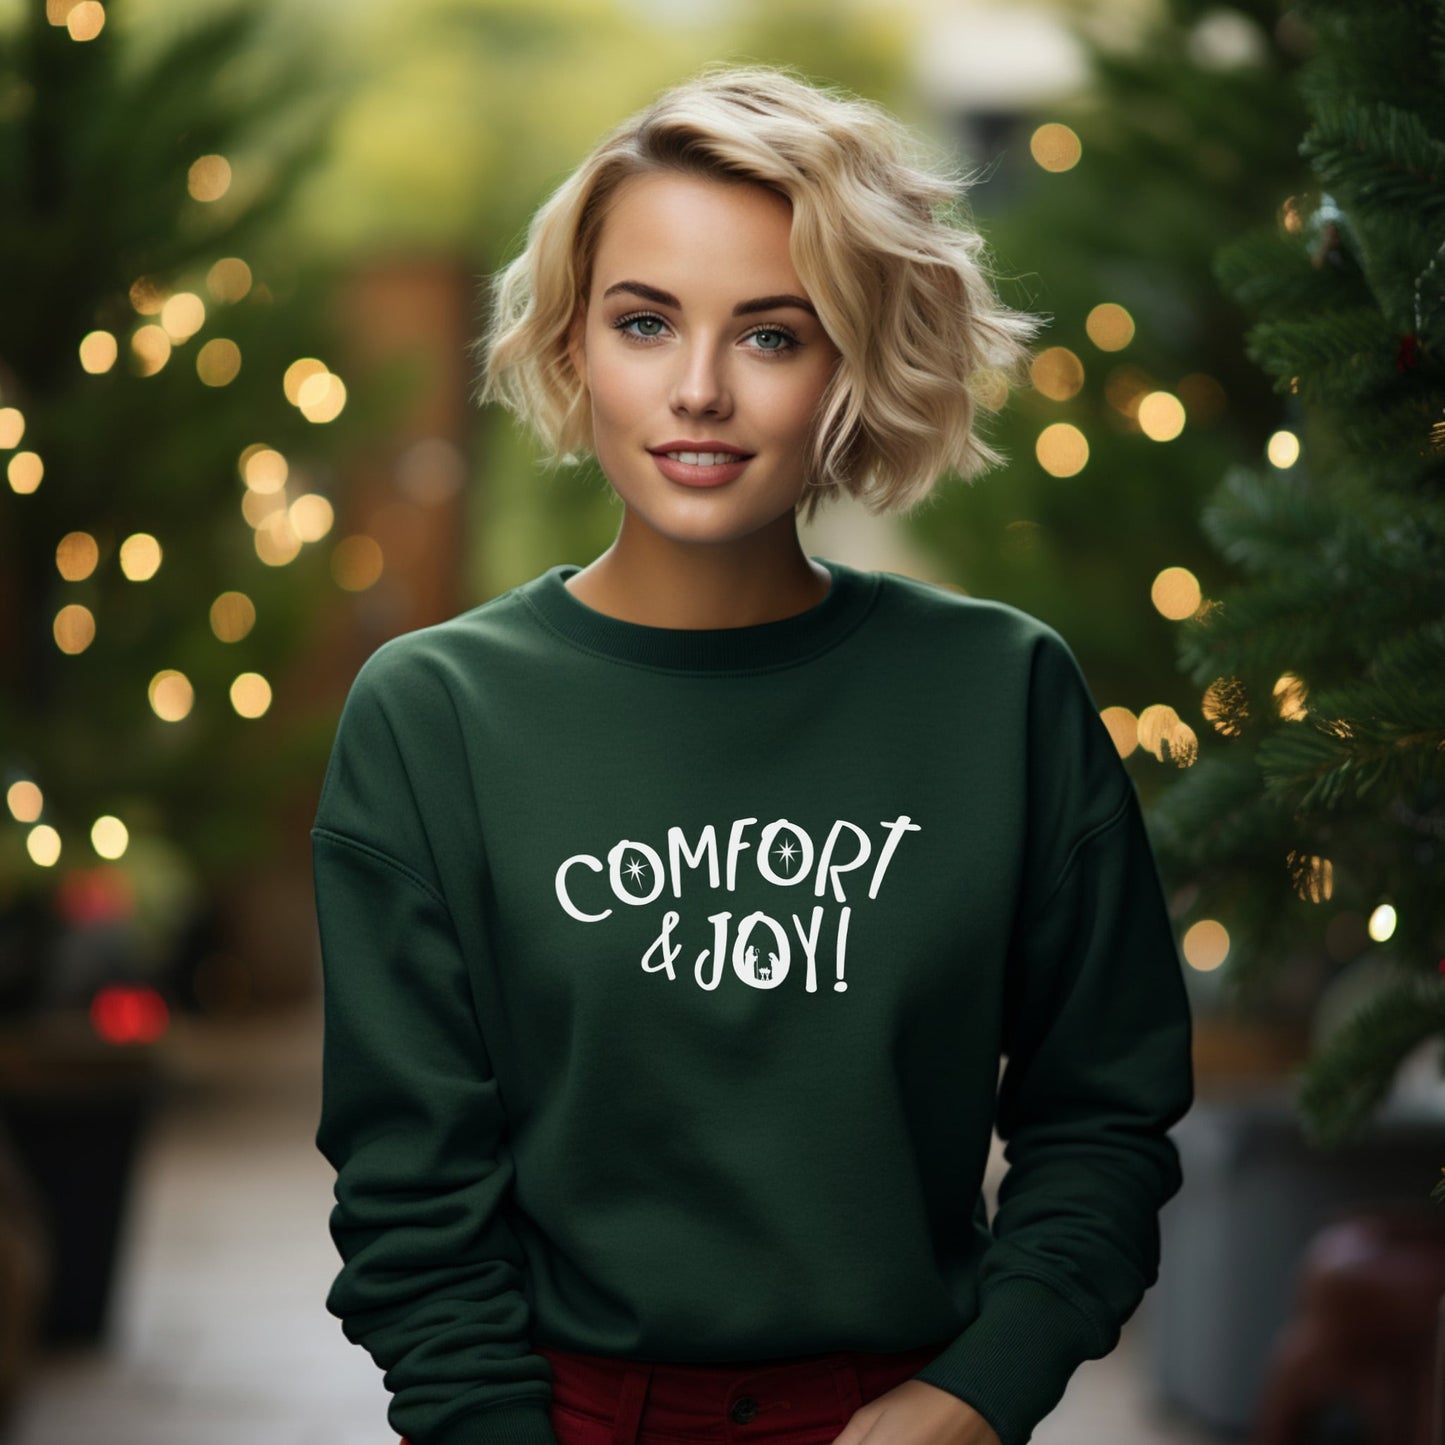 Comfort & Joy Sweatshirt in Forest Green